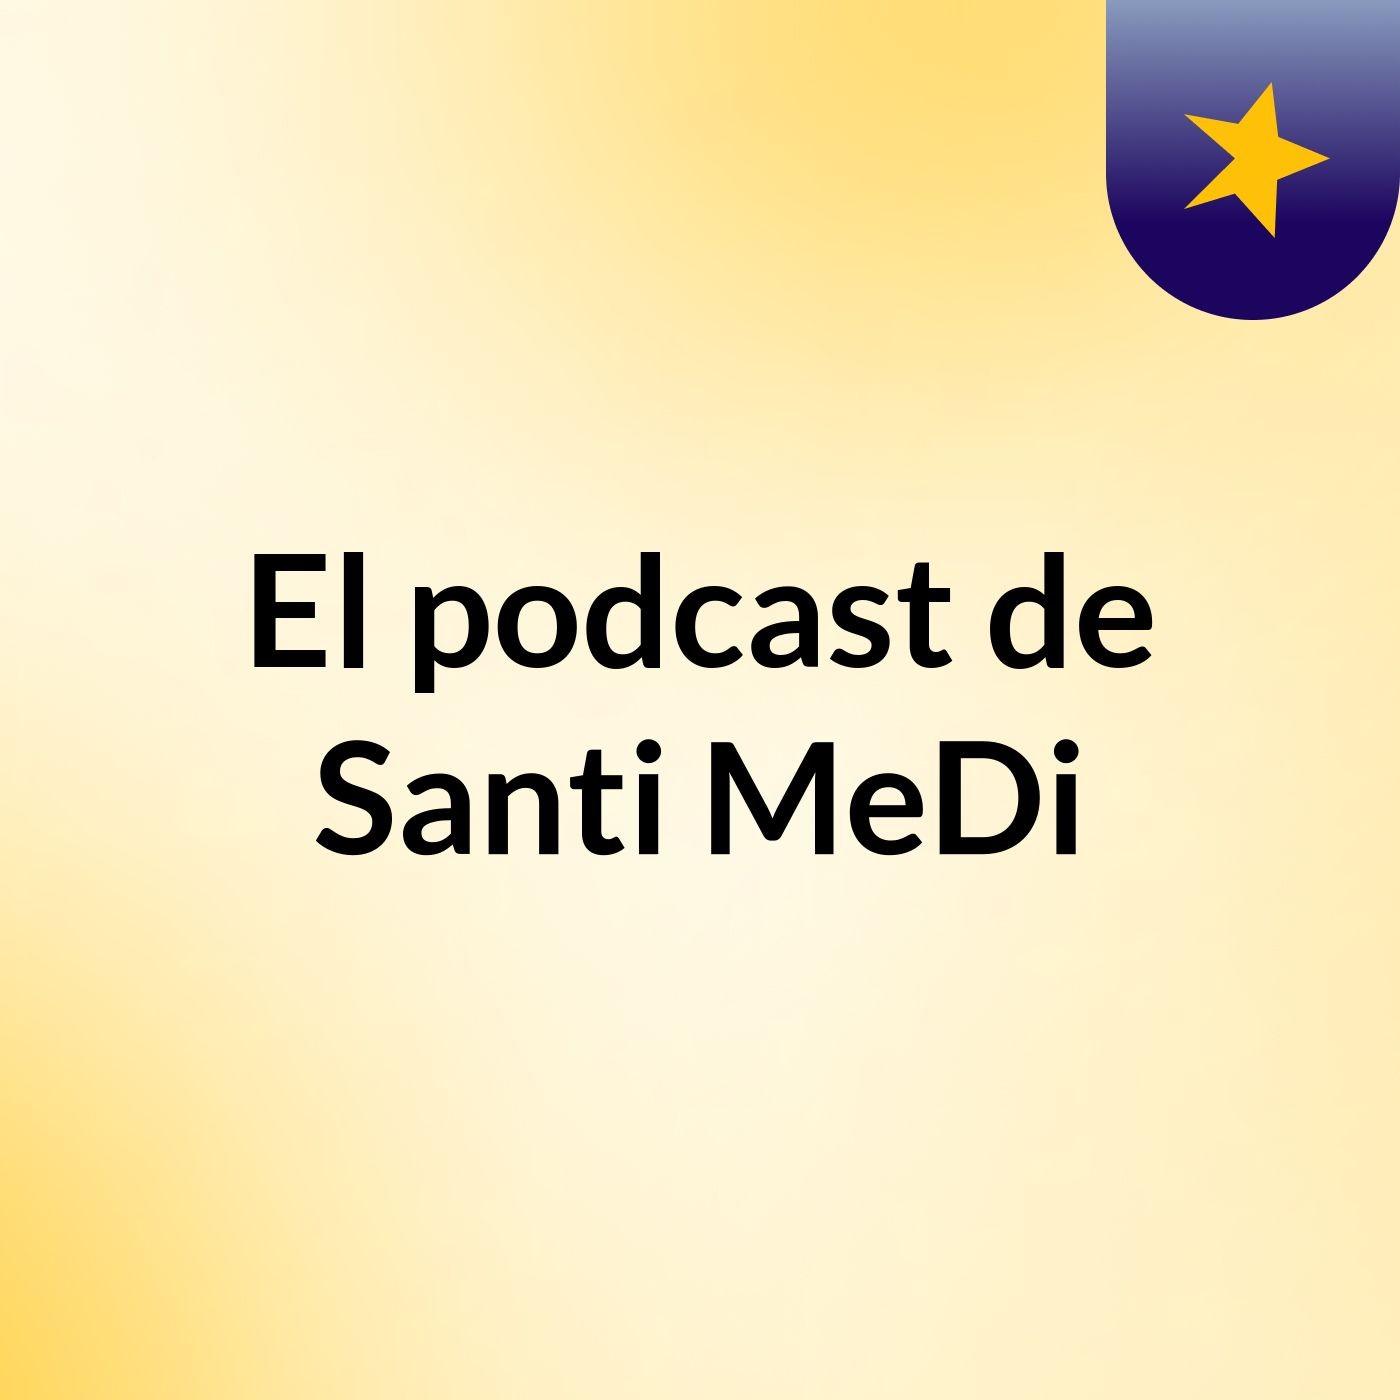 El podcast de Santi MeDi